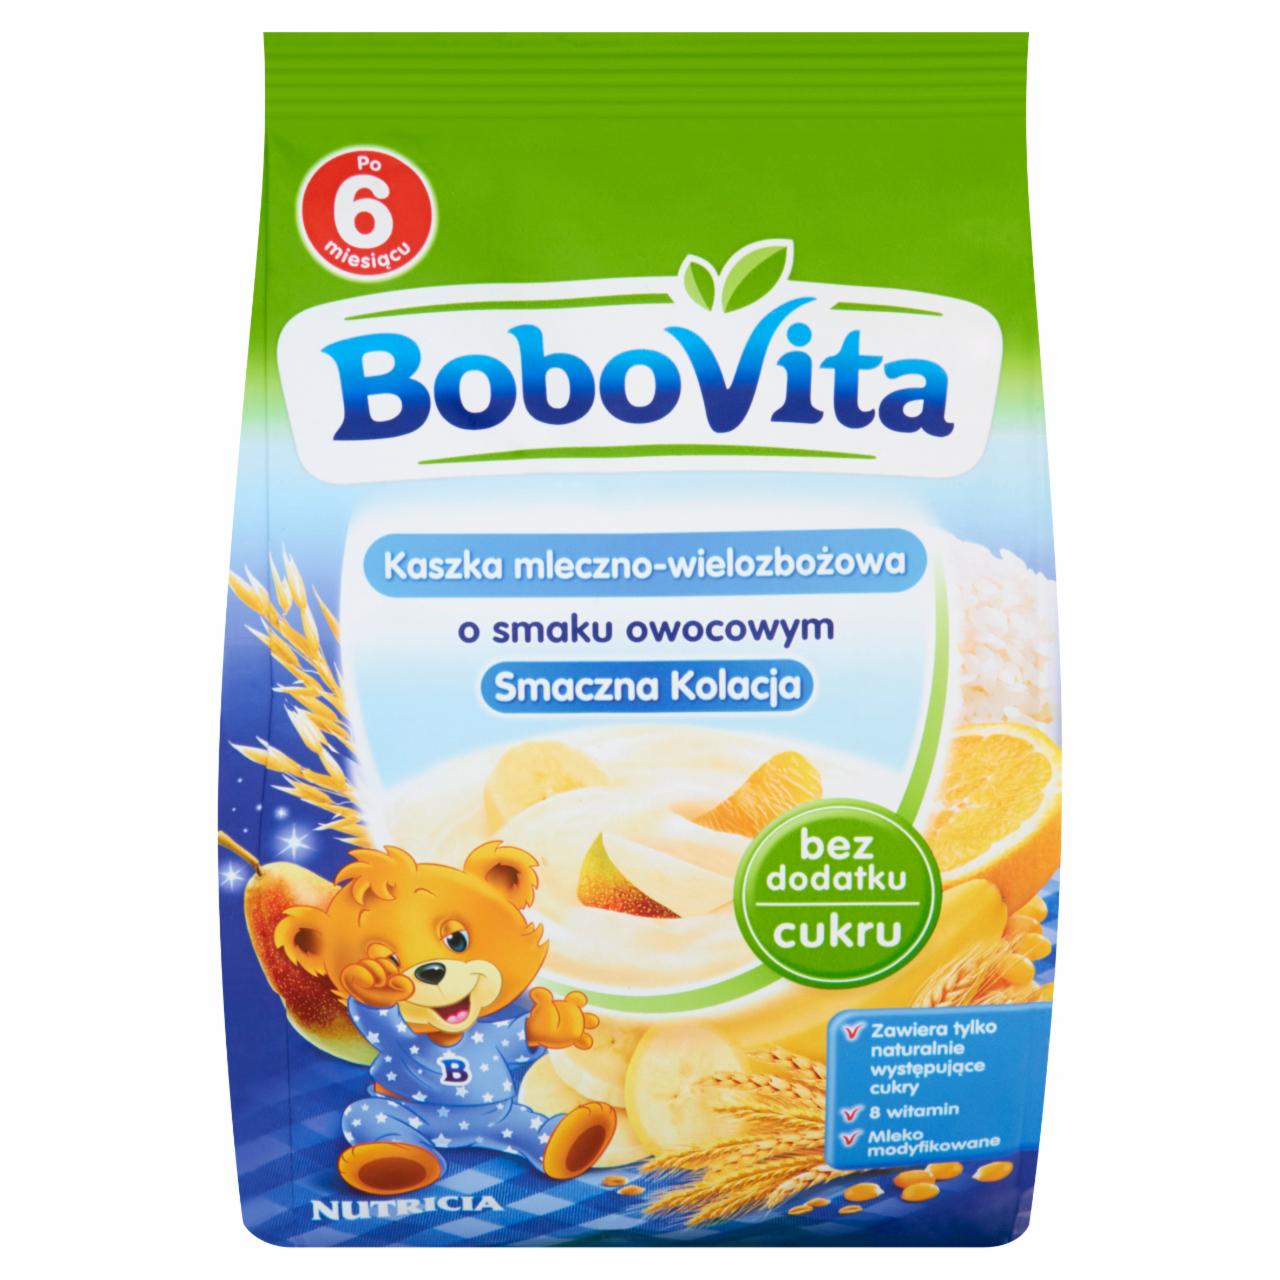 Zdjęcia - BoboVita Smaczna Kolacja Kaszka mleczno-wielozbożowa o smaku owocowym po 6 miesiącu 230 g